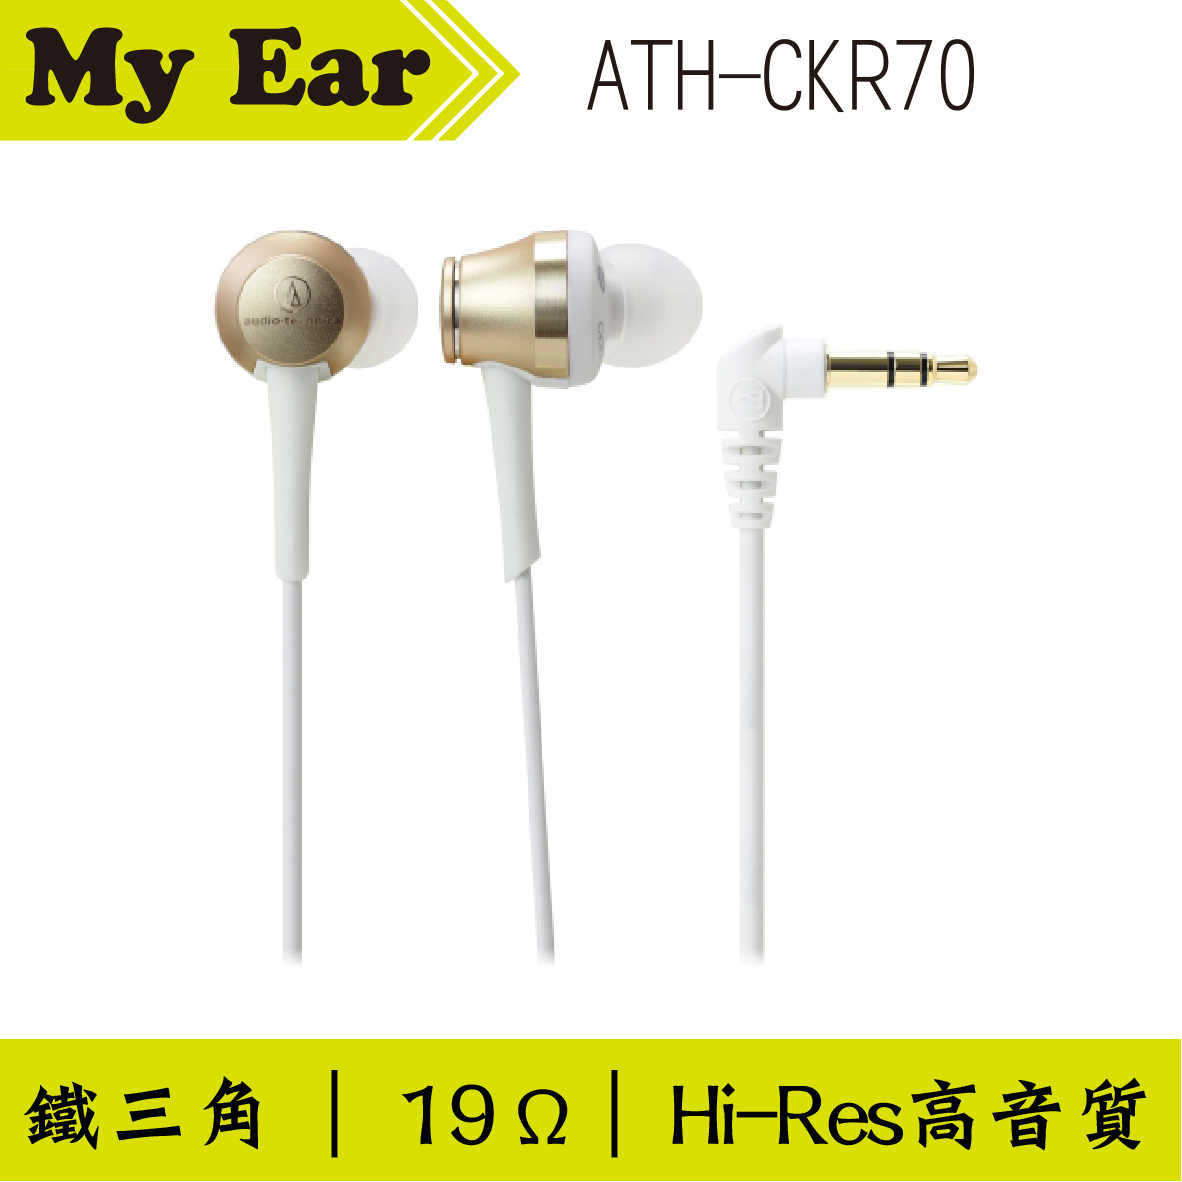 鐵三角 ATH-CKR70 耳道式耳機 藍色｜My Ear 耳機專門店